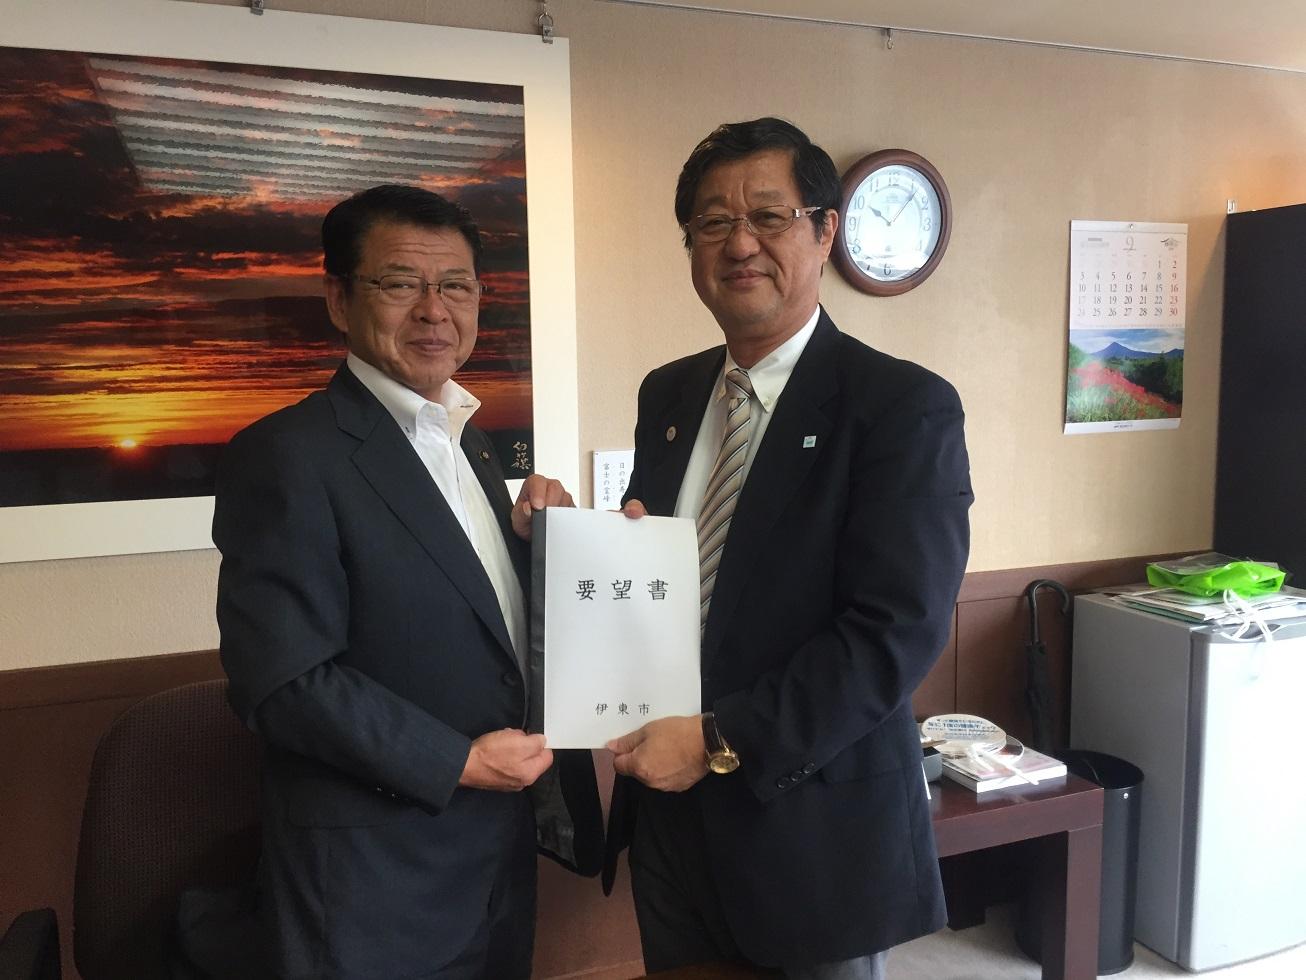 2018年9月4日 伊東市からの要望書を手渡しする伊東市長と受け取る土屋副知事の写真